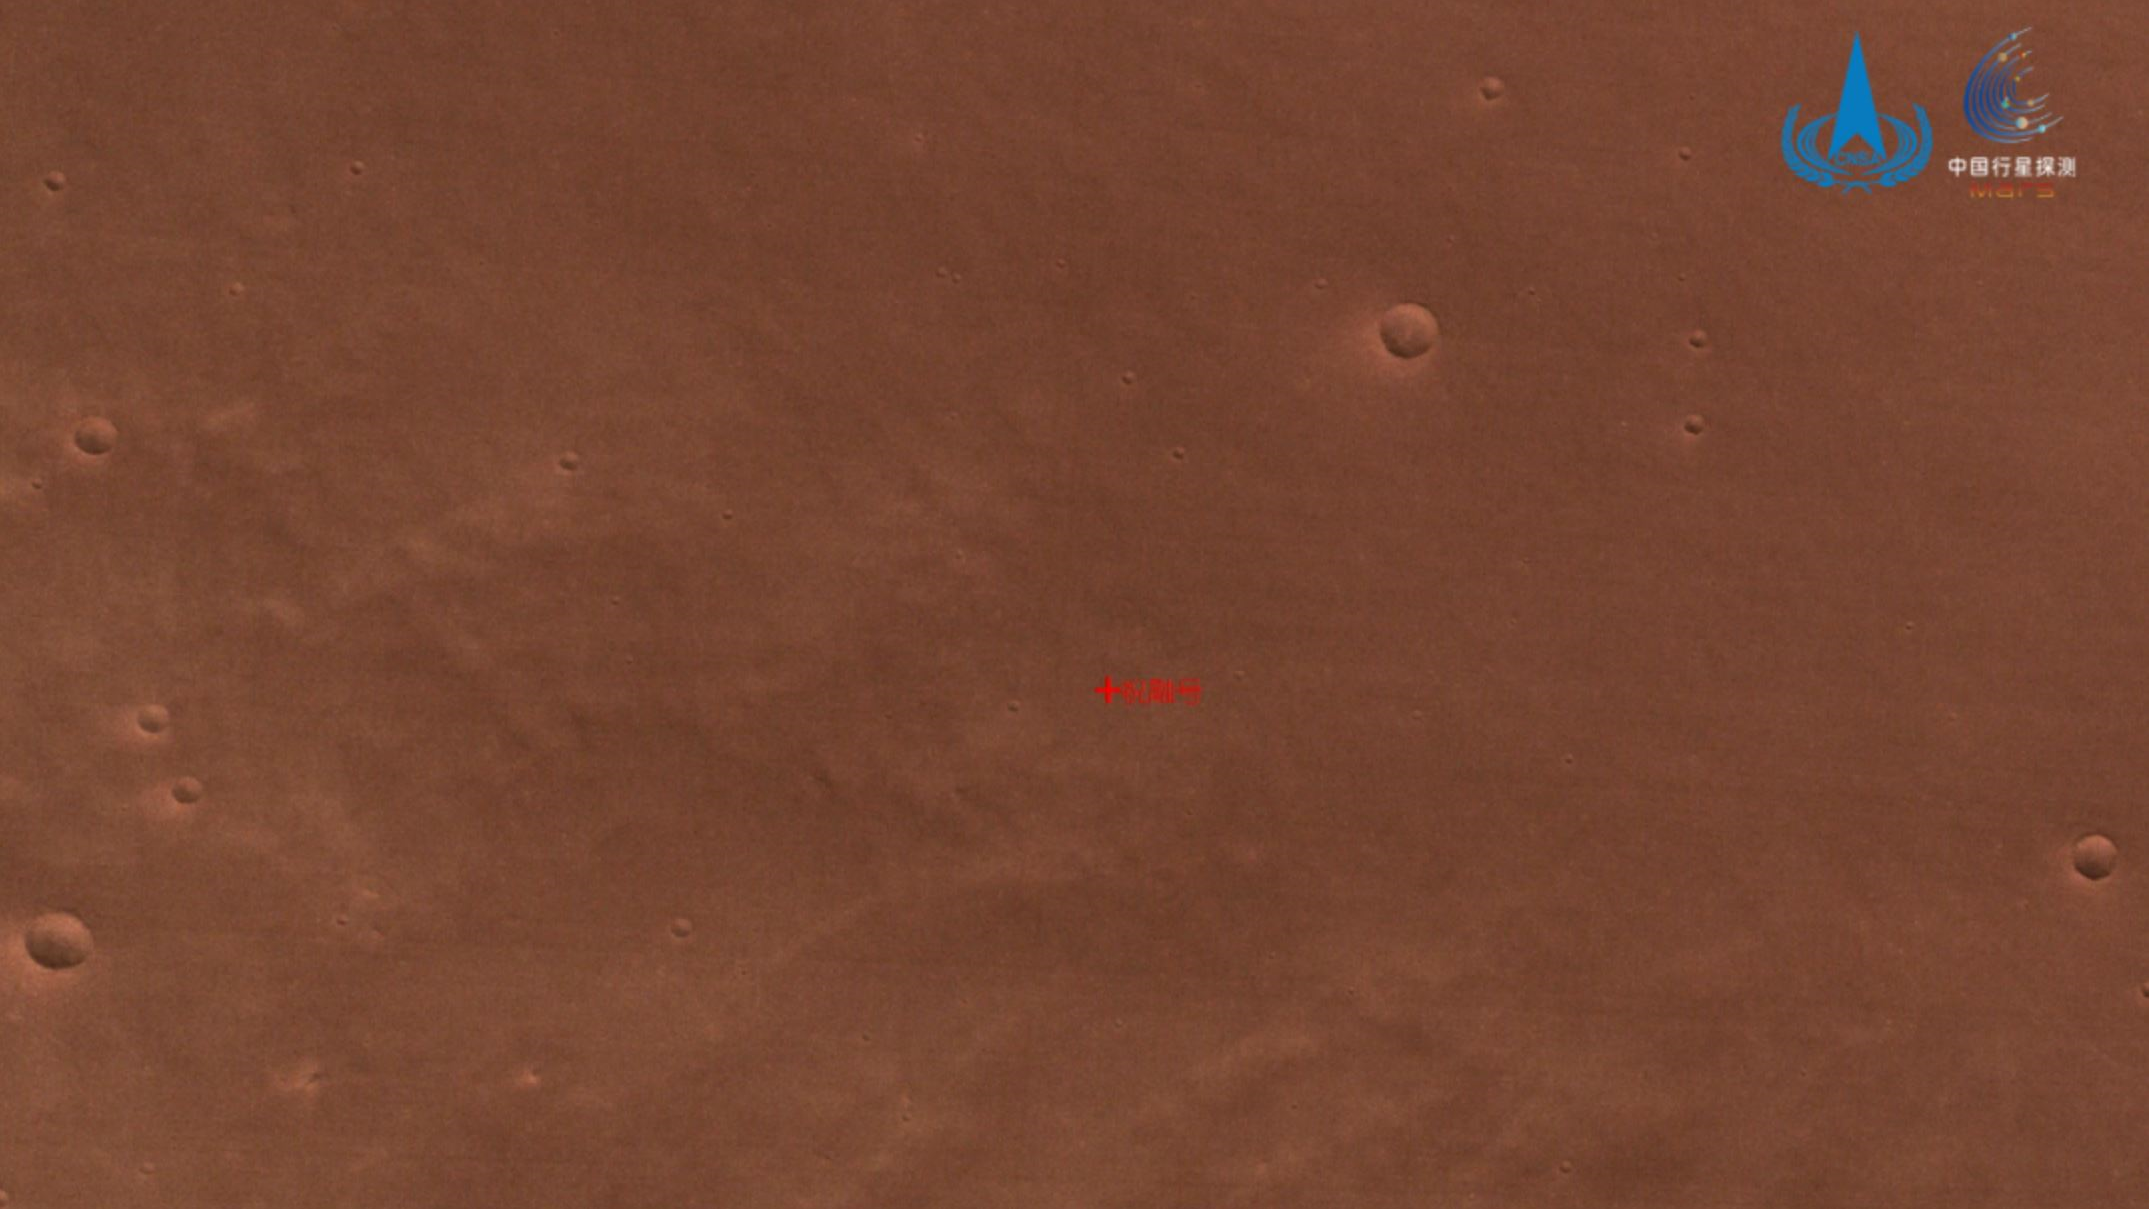 मंगल की लाल सतह पर क्रेटर हैं